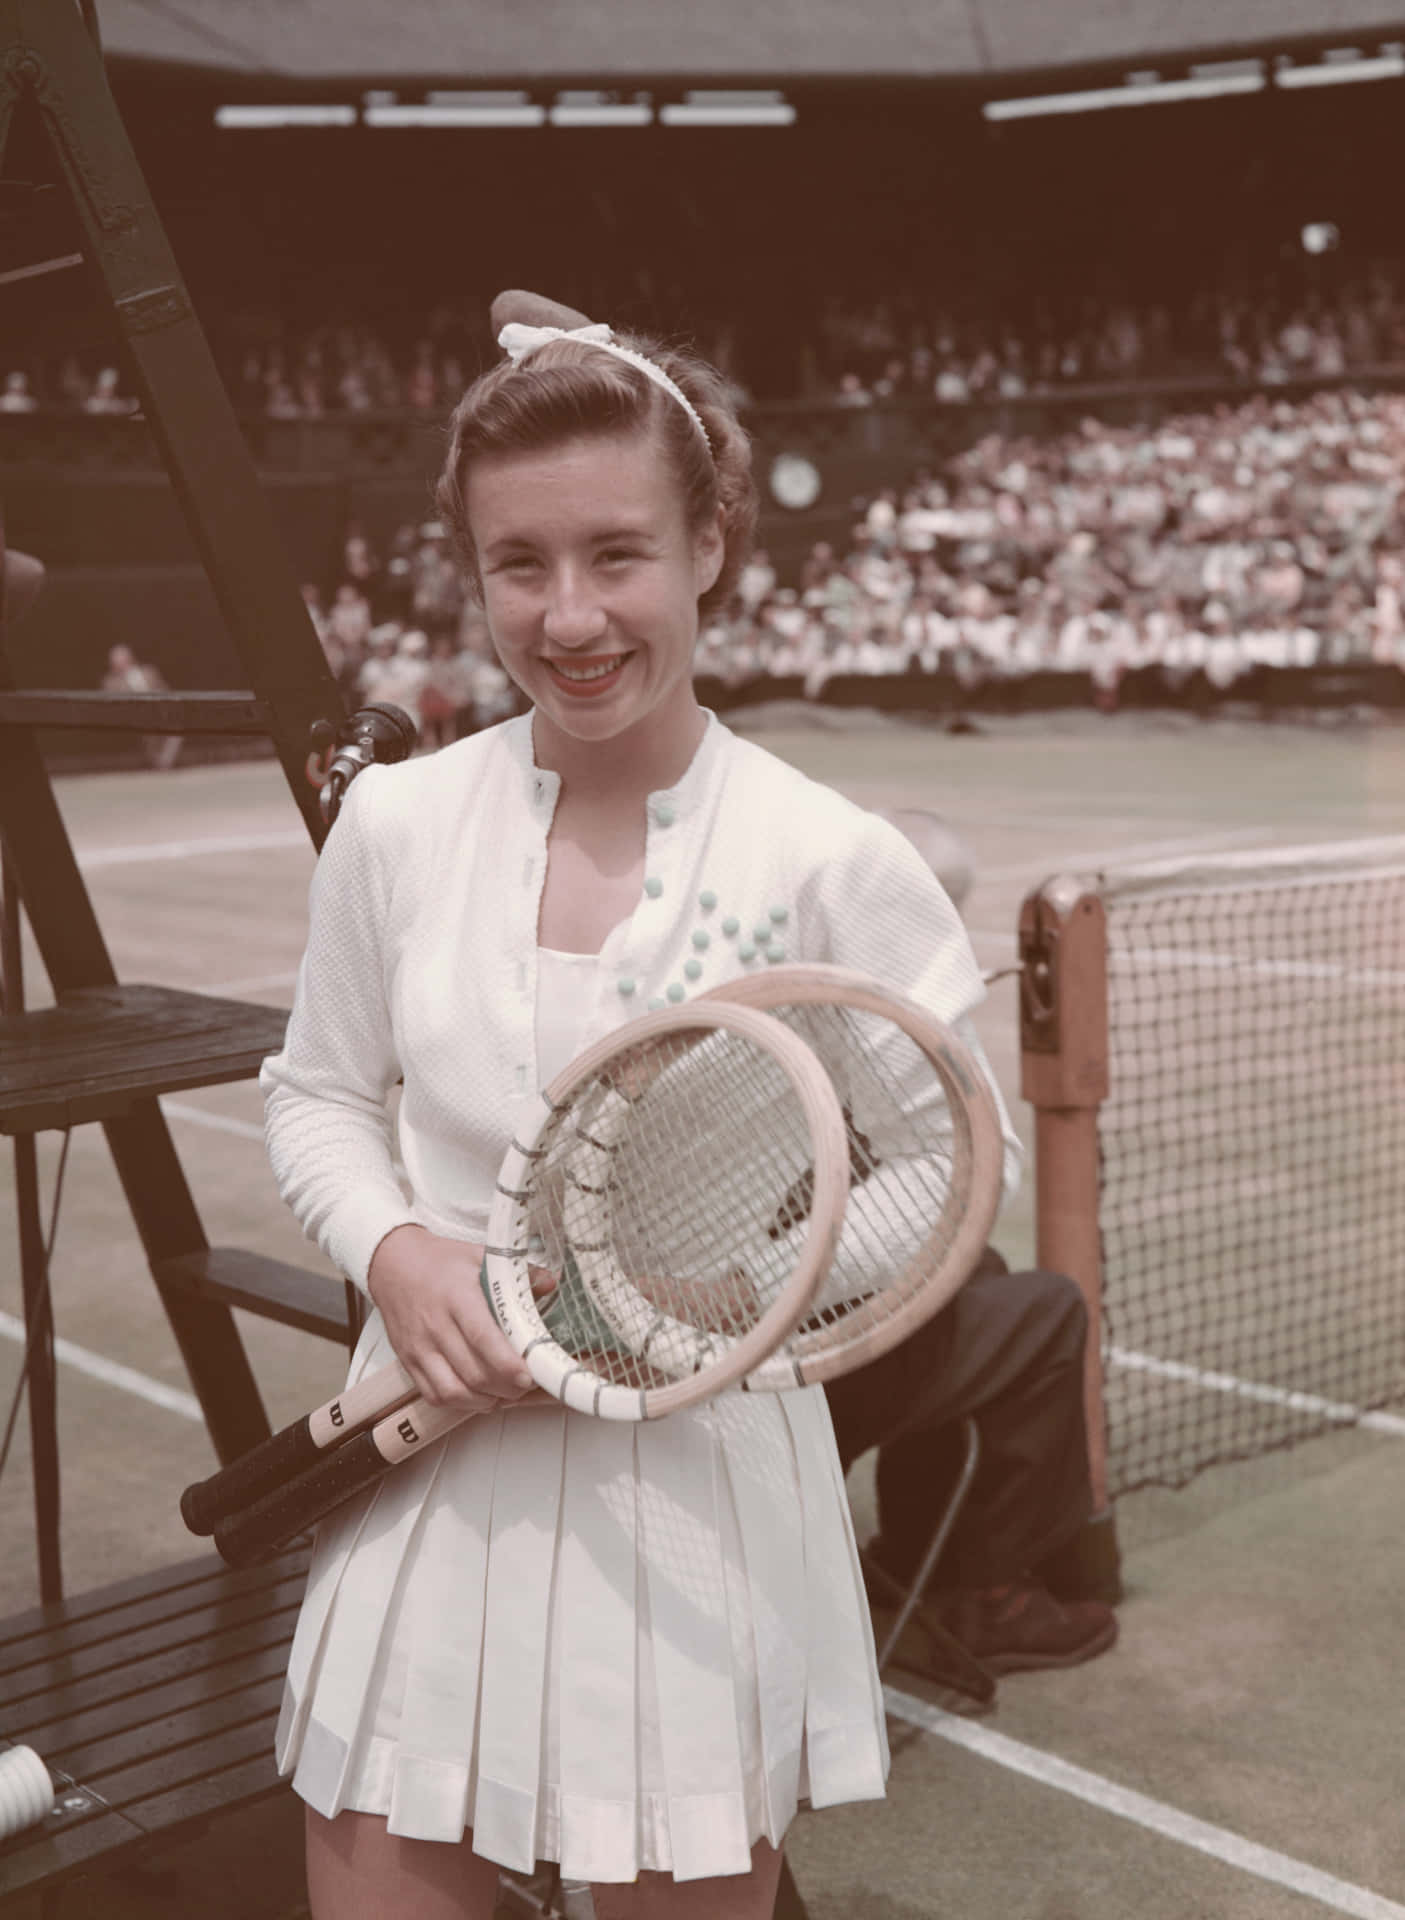 Maureenconnolly Women's Singles Final 1952 Skulle Översättas Till 